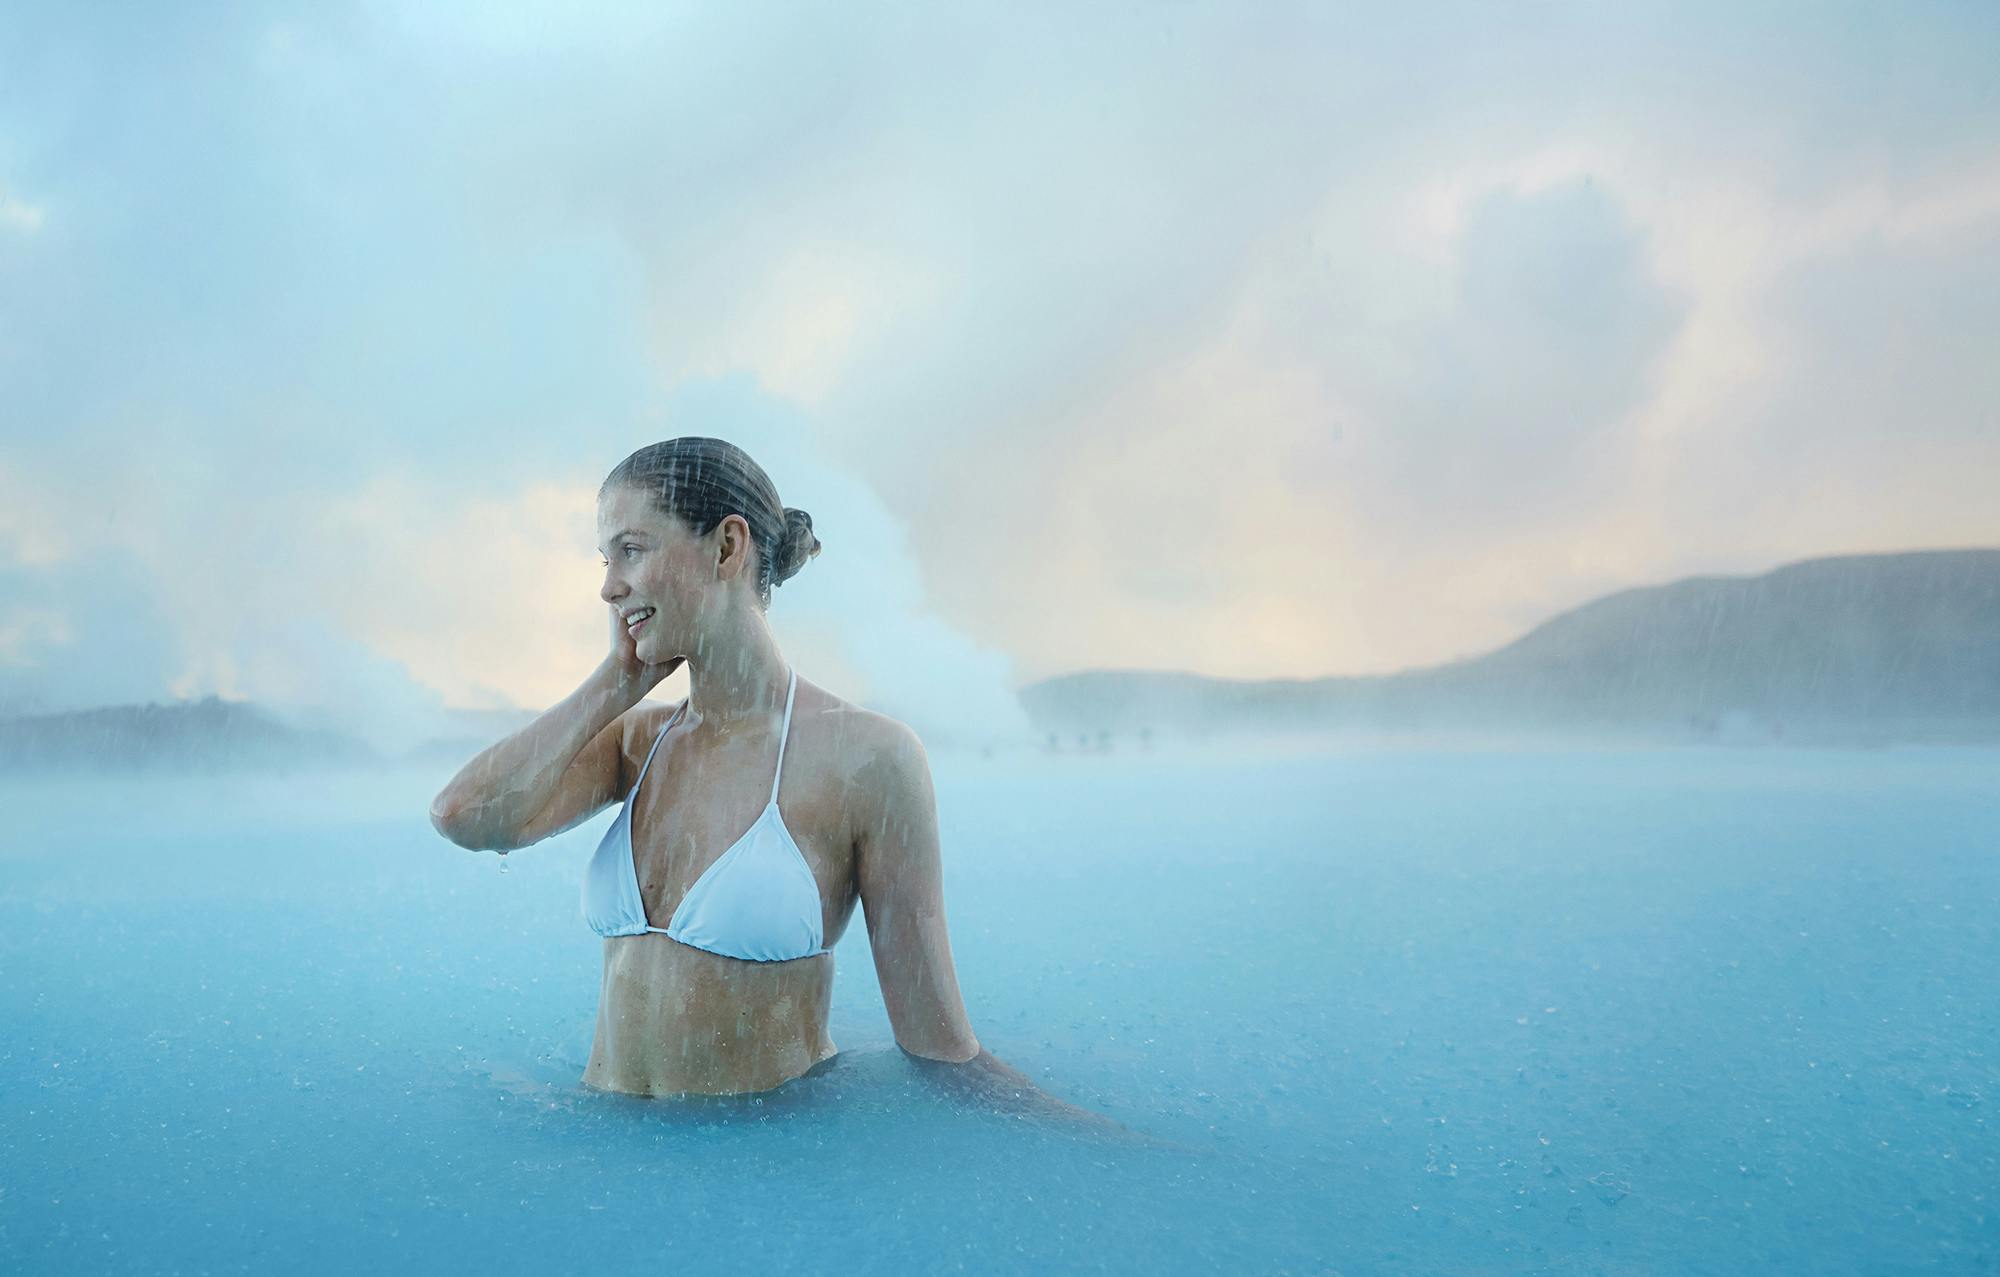 Das Wellnessbad Blaue Lagune ist bei Besuchern und Einheimischen gleichermaßen beliebt, was an der heilenden Wirkung des Kieselerdeschlamms und dem entspannenden warmen Wasser liegt.